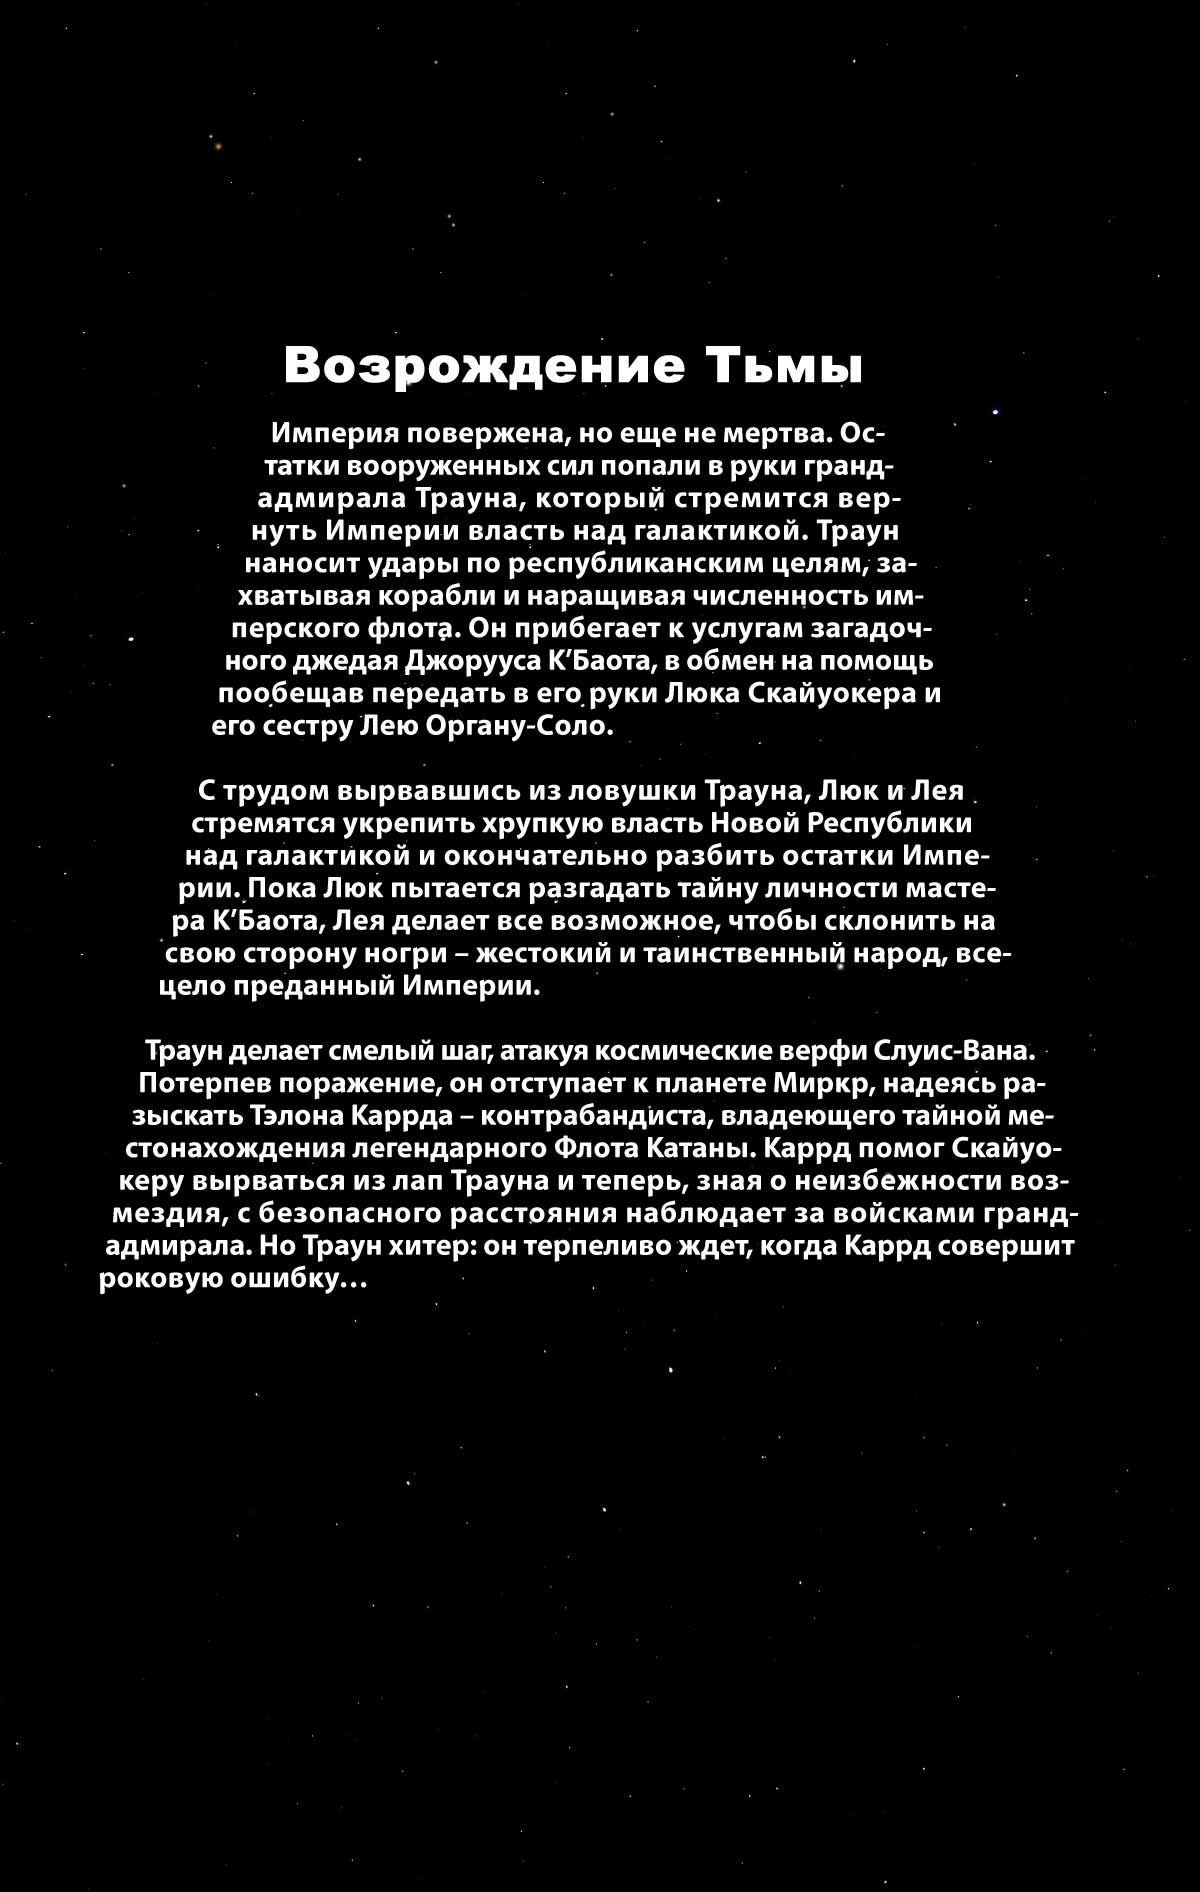 Звездные Войны: Возрождение Тьмы №1 онлайн